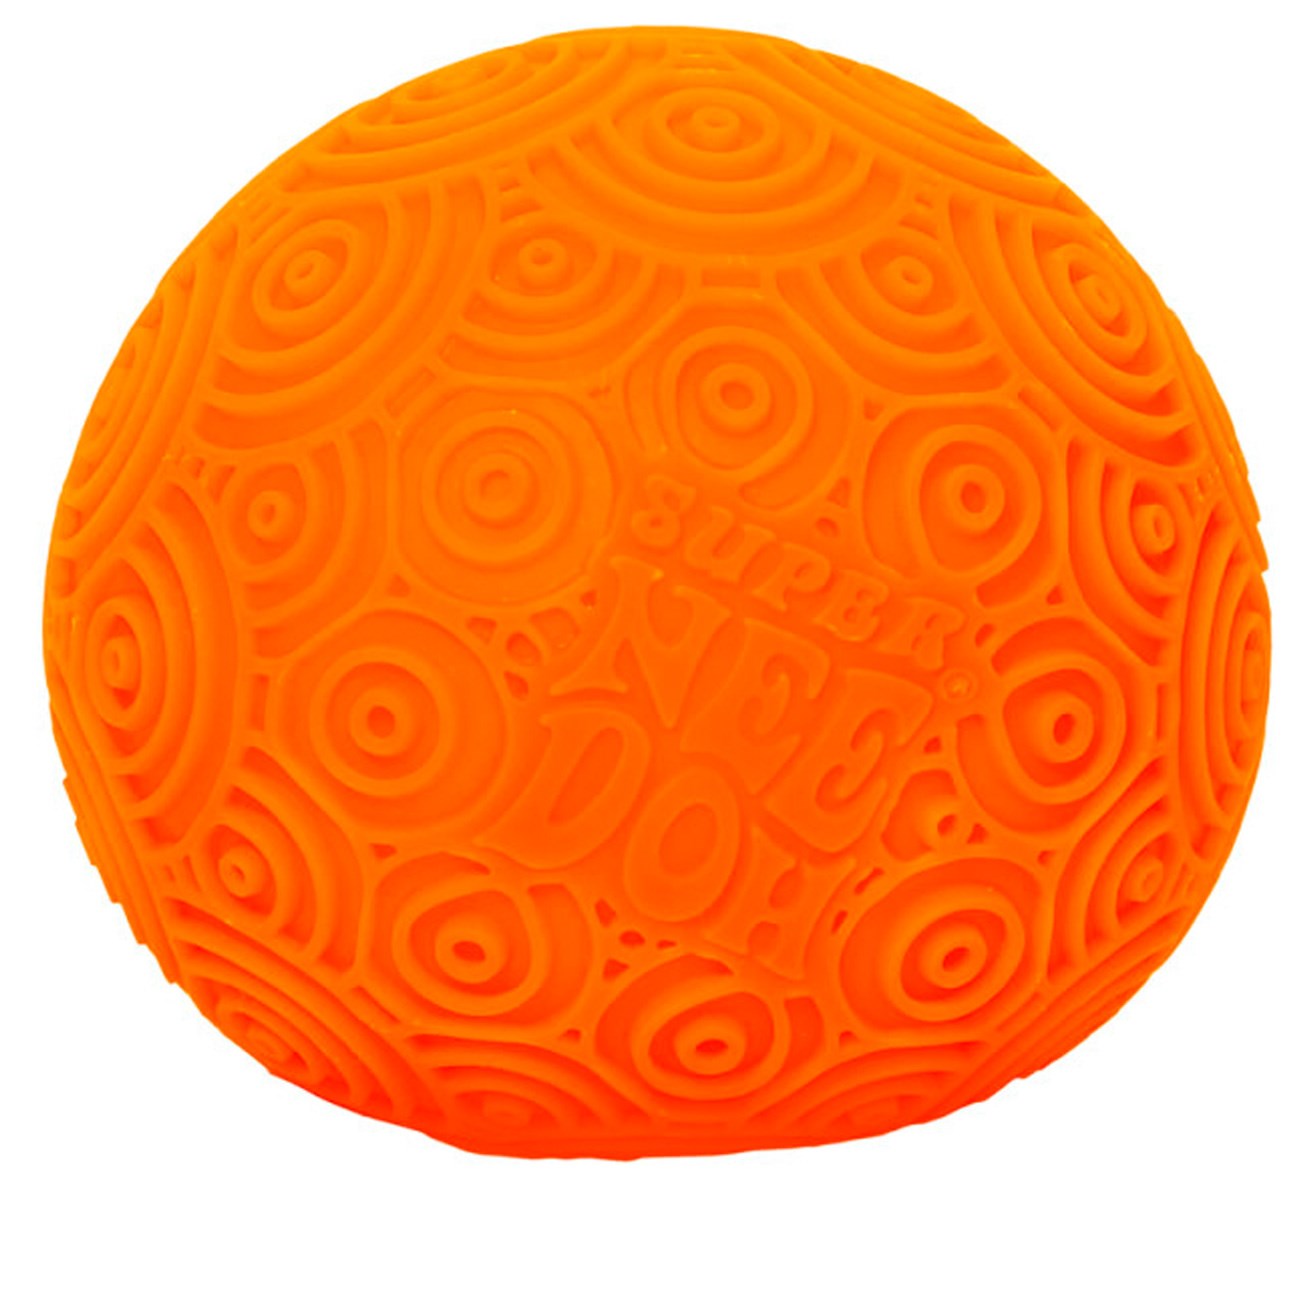 NeeDoh Super Ripples Orange Swirled